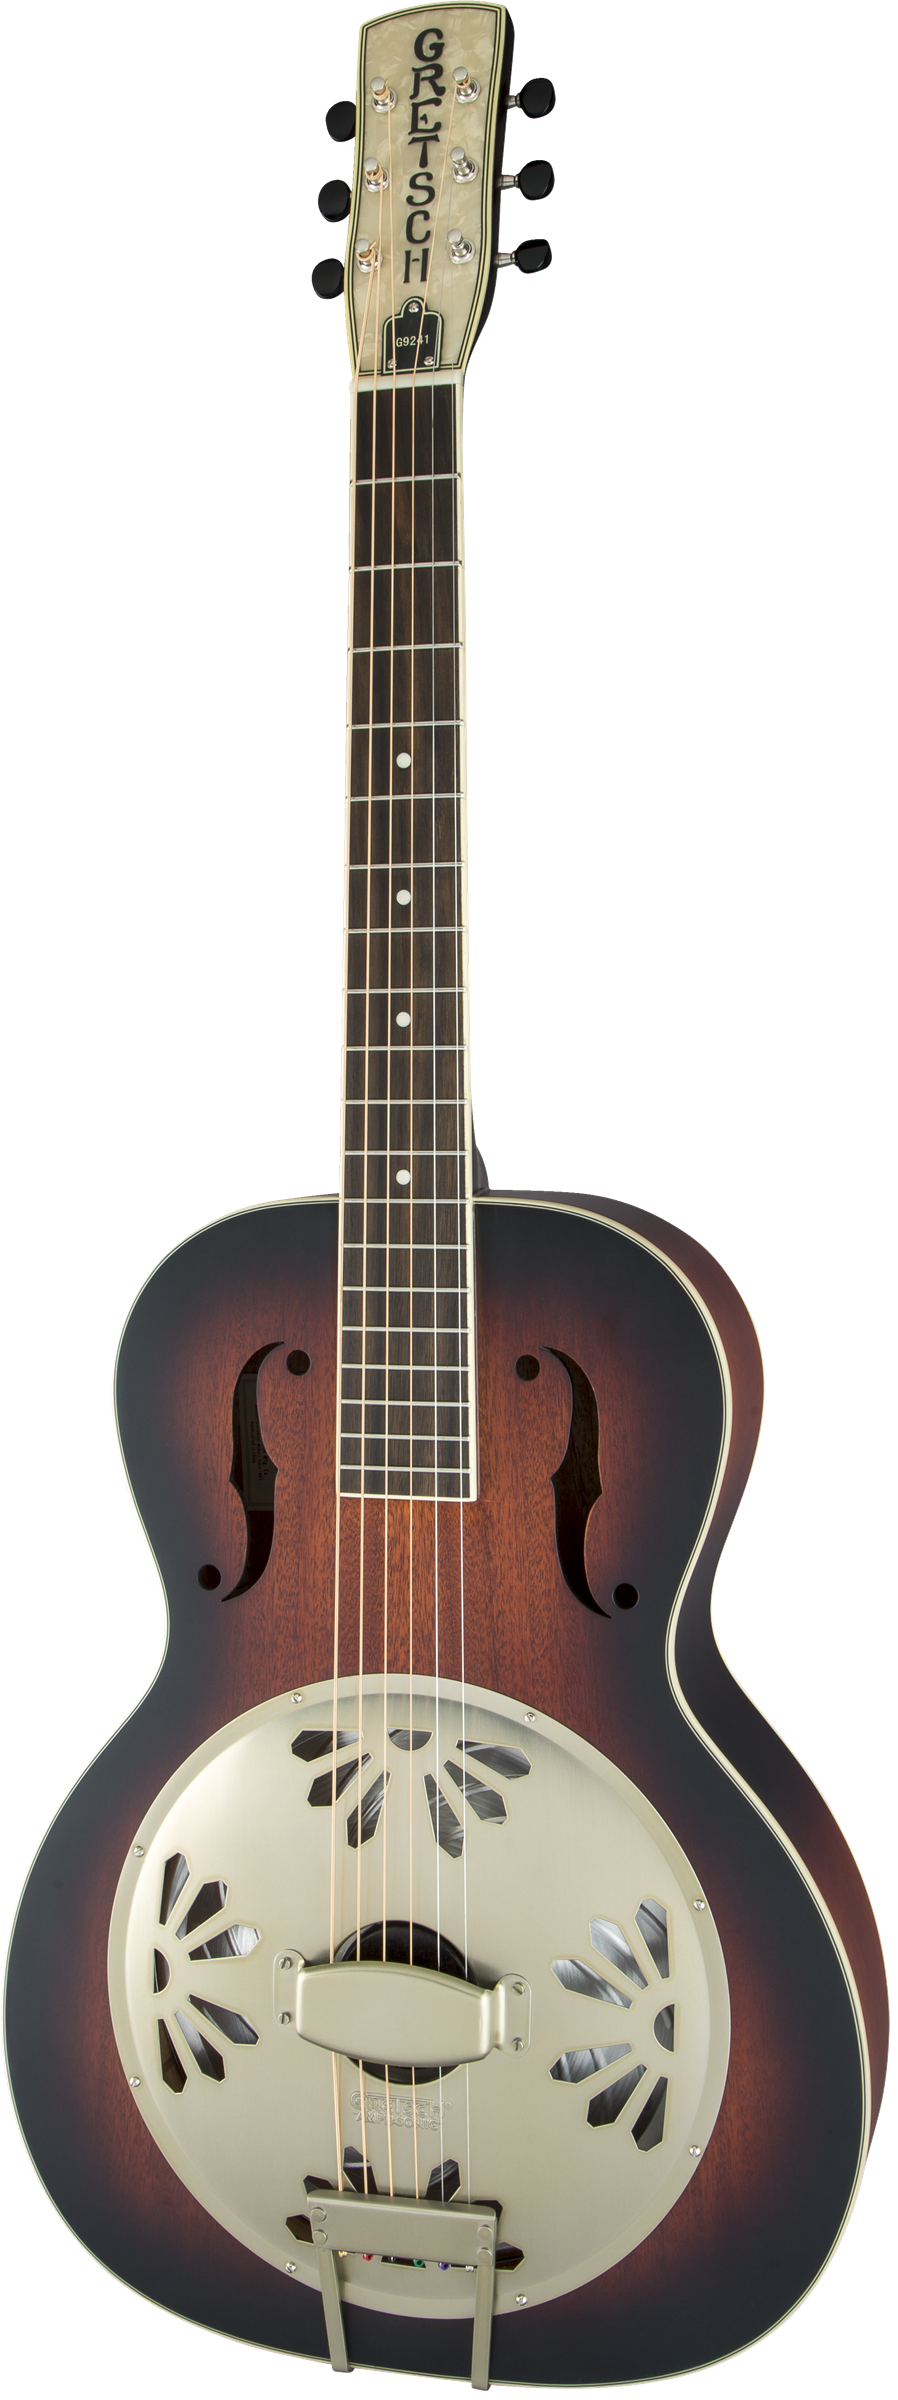 Gretsch G9240 Alligator Biscuit Round Neck Acoustic Resonator Guitar